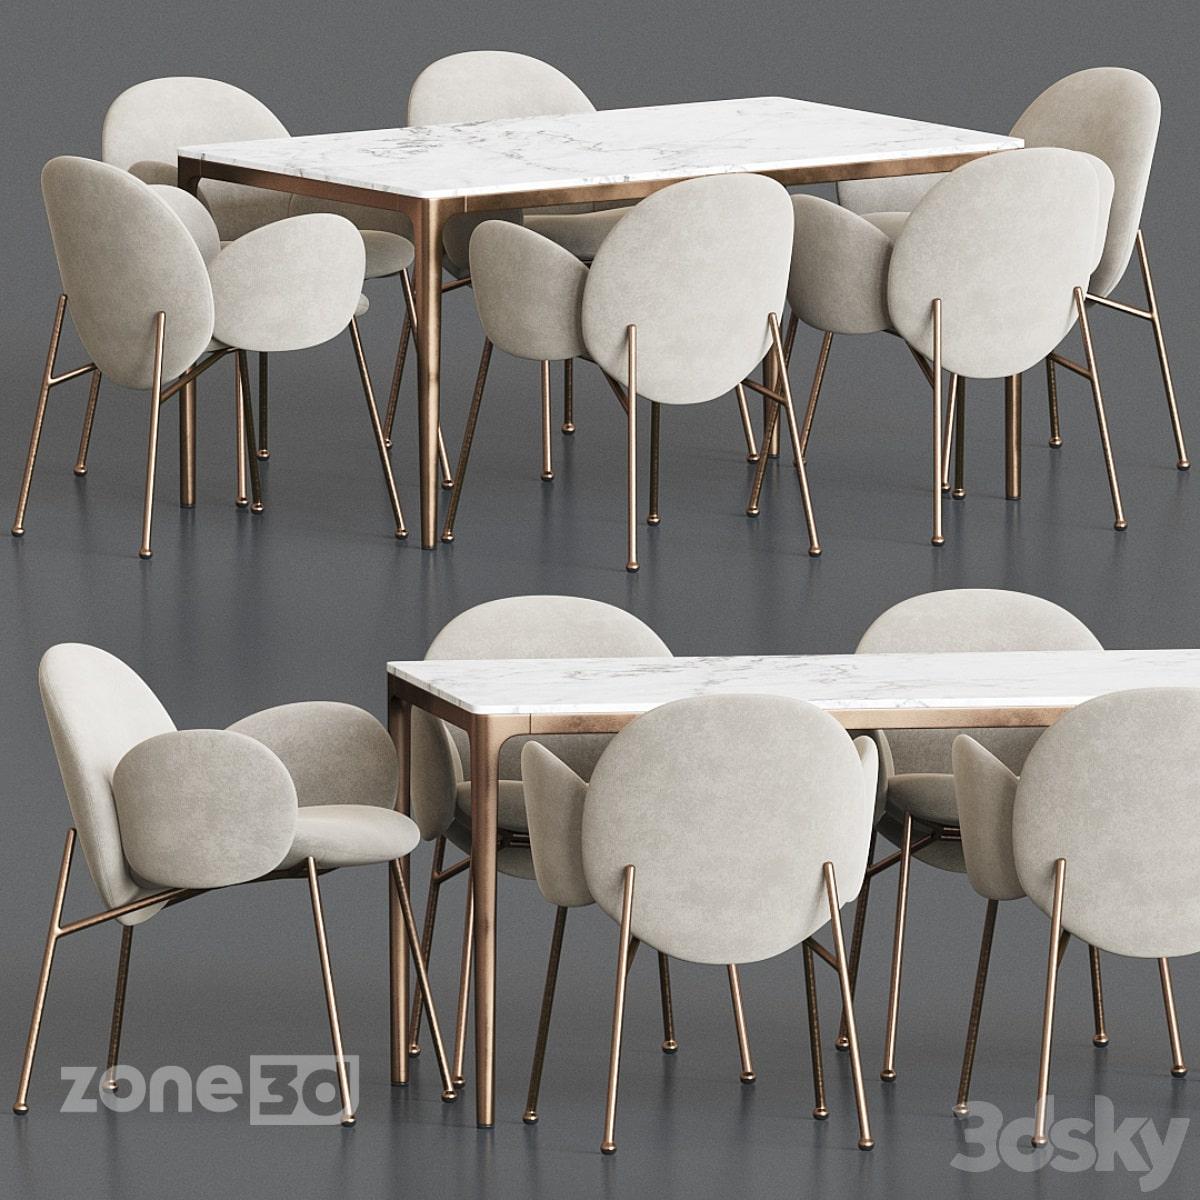 آبجکت میز غذاخوری مدرن با رویه سنگی و پایه فلزی به همراه صندلی پارچه ای مدل OLA&CANTO